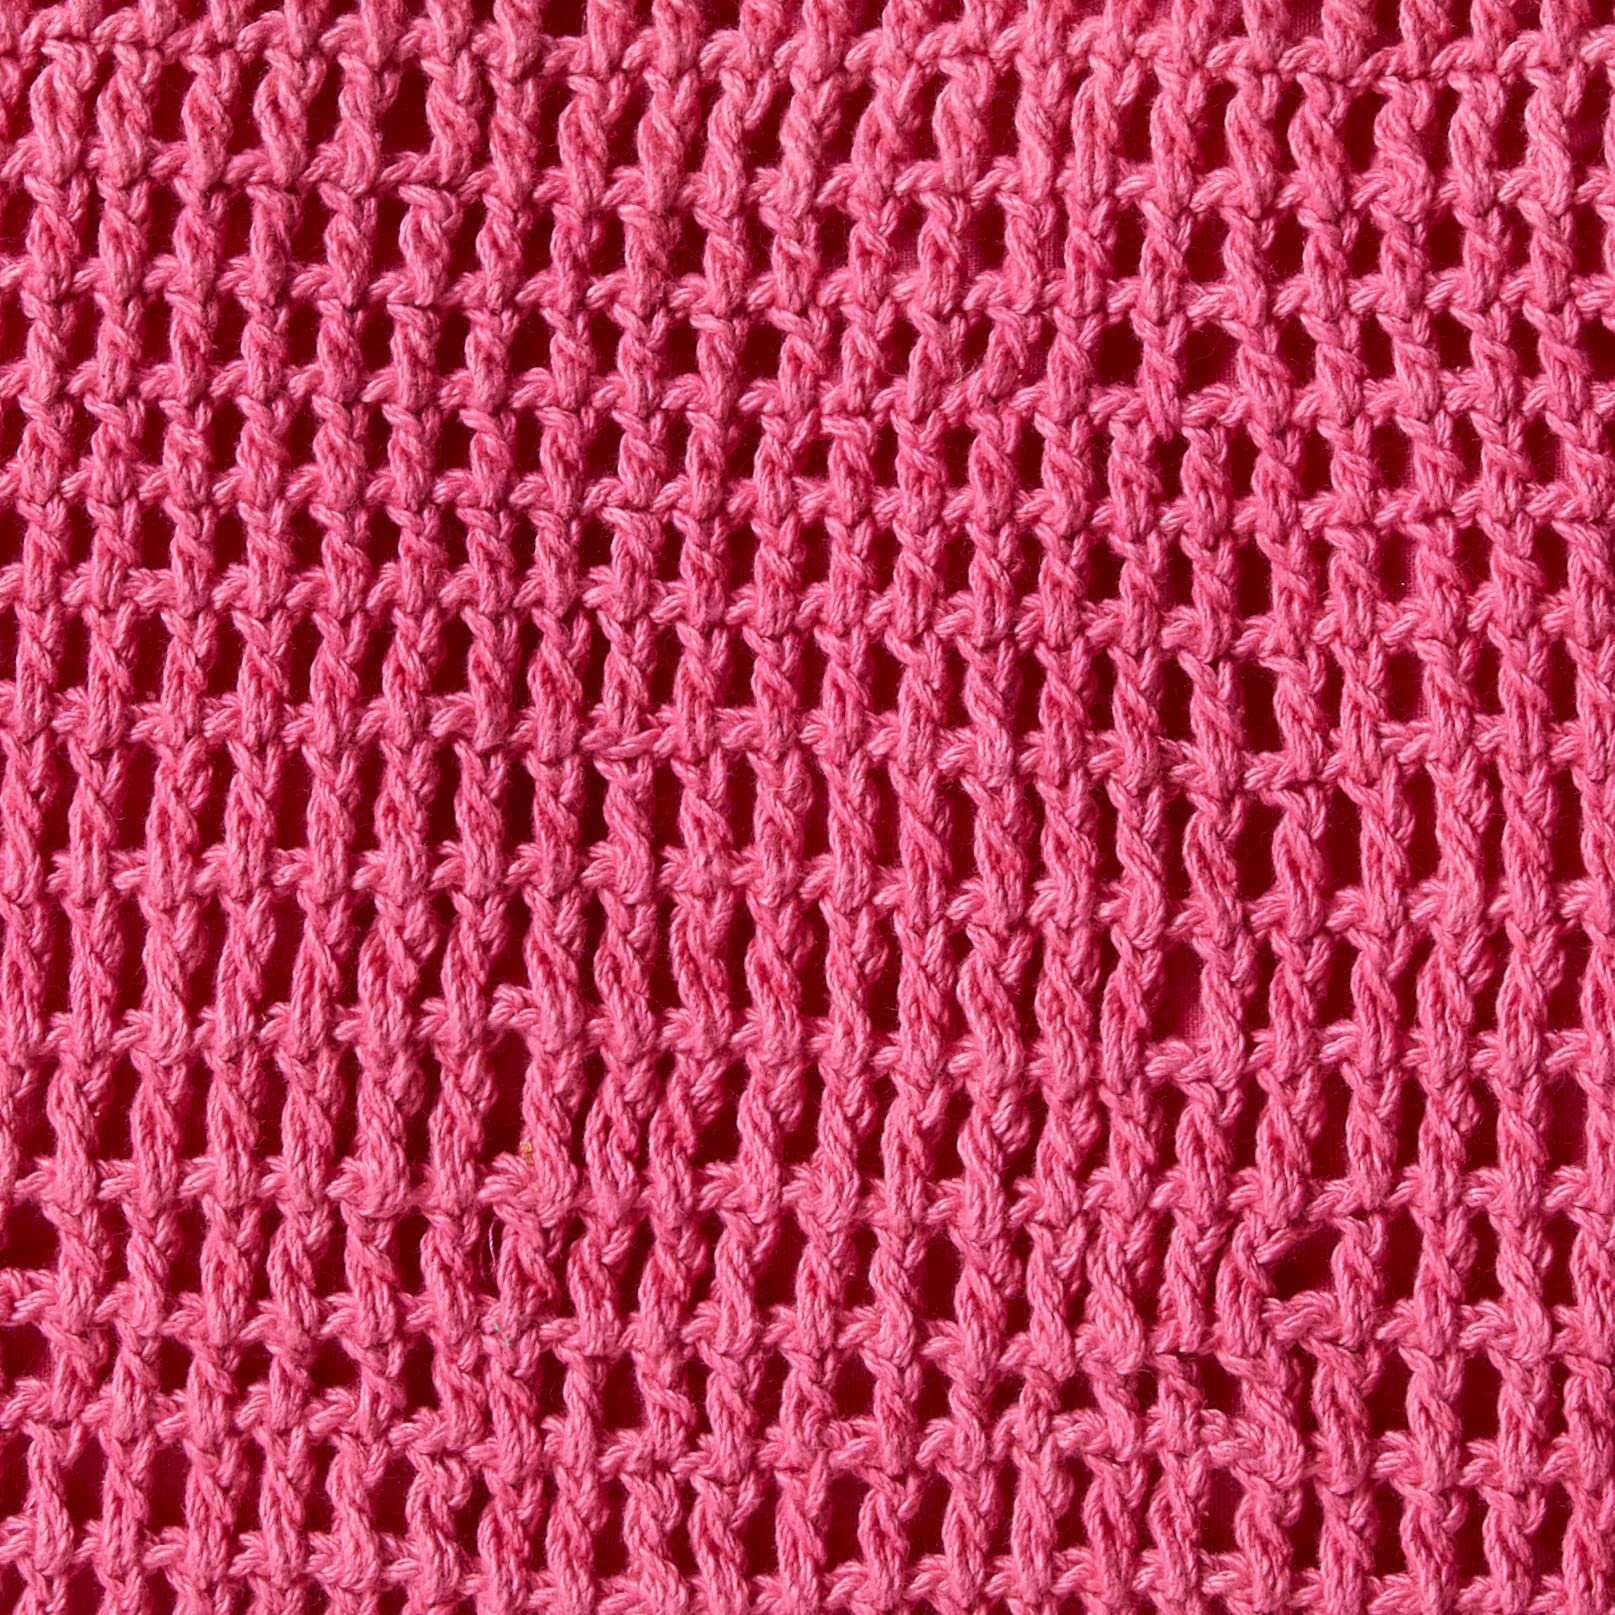 The Drop Women's Alora Crochet Small Tote